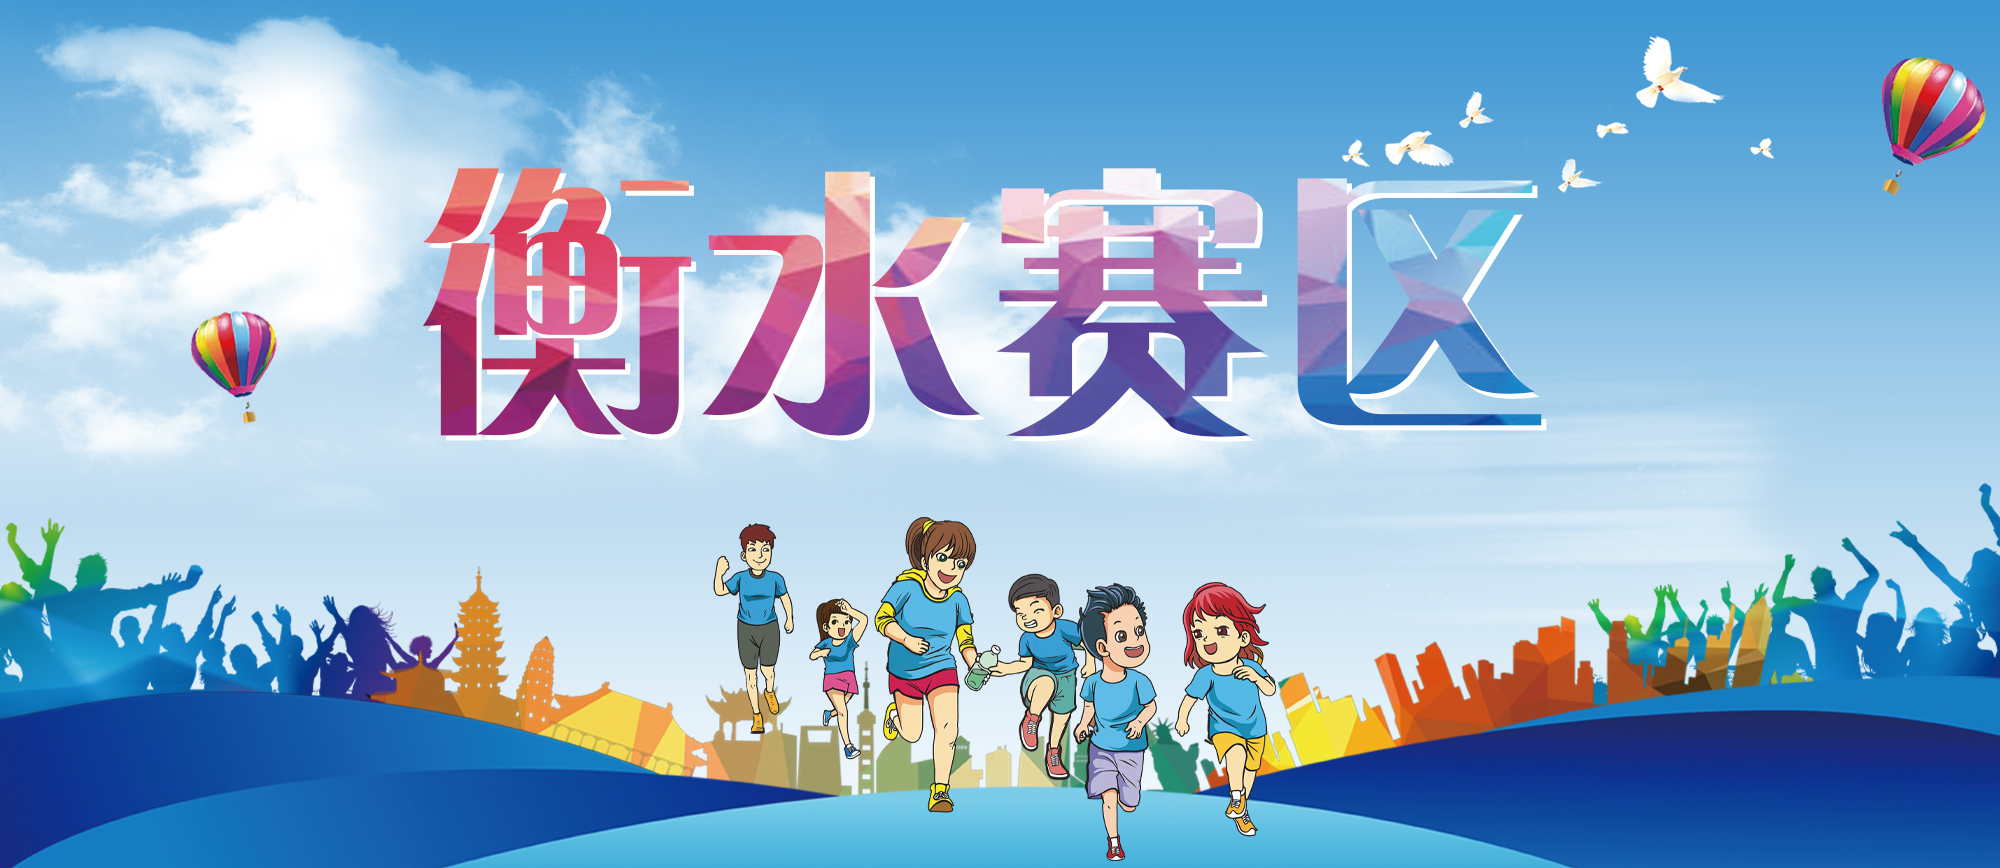 河北省第二届亲子运动会开始啦!衡水赛区的看